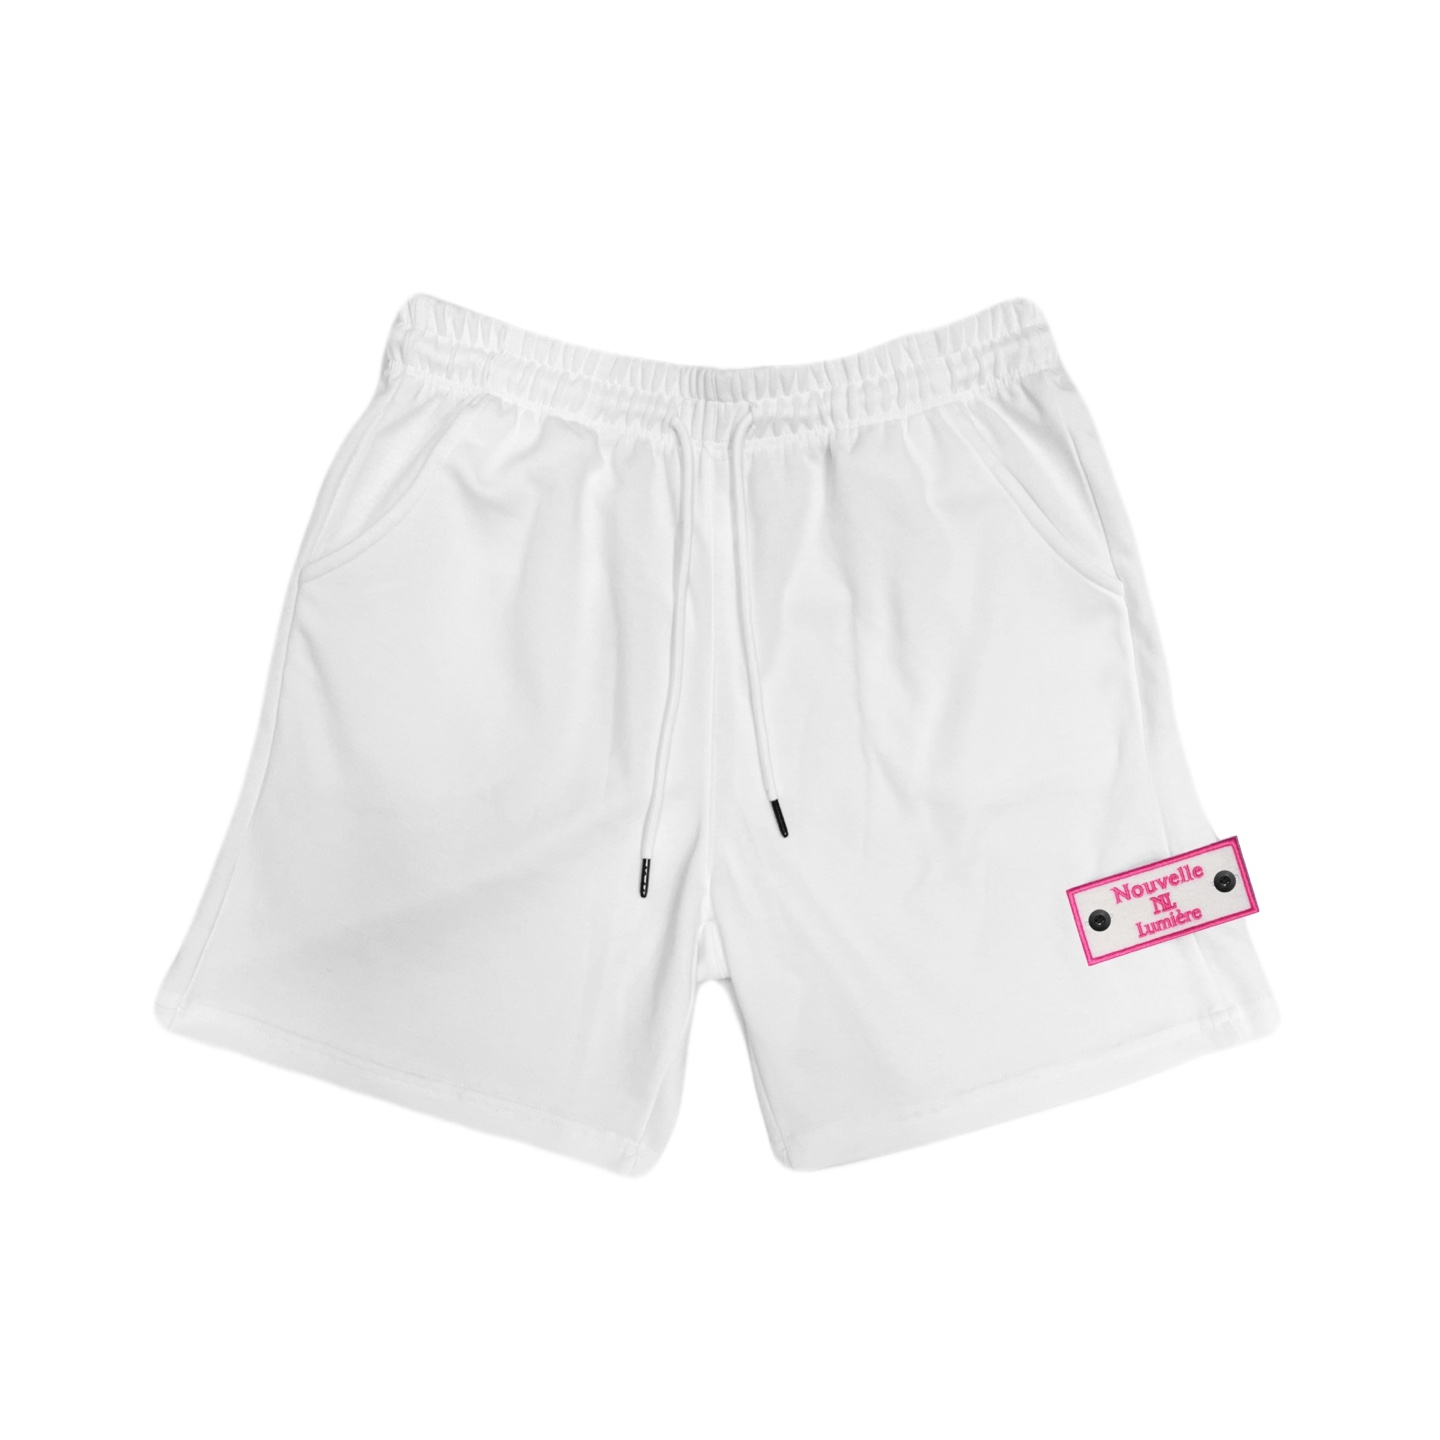 Nouvelmière Signature White Shorts (Pink edition)